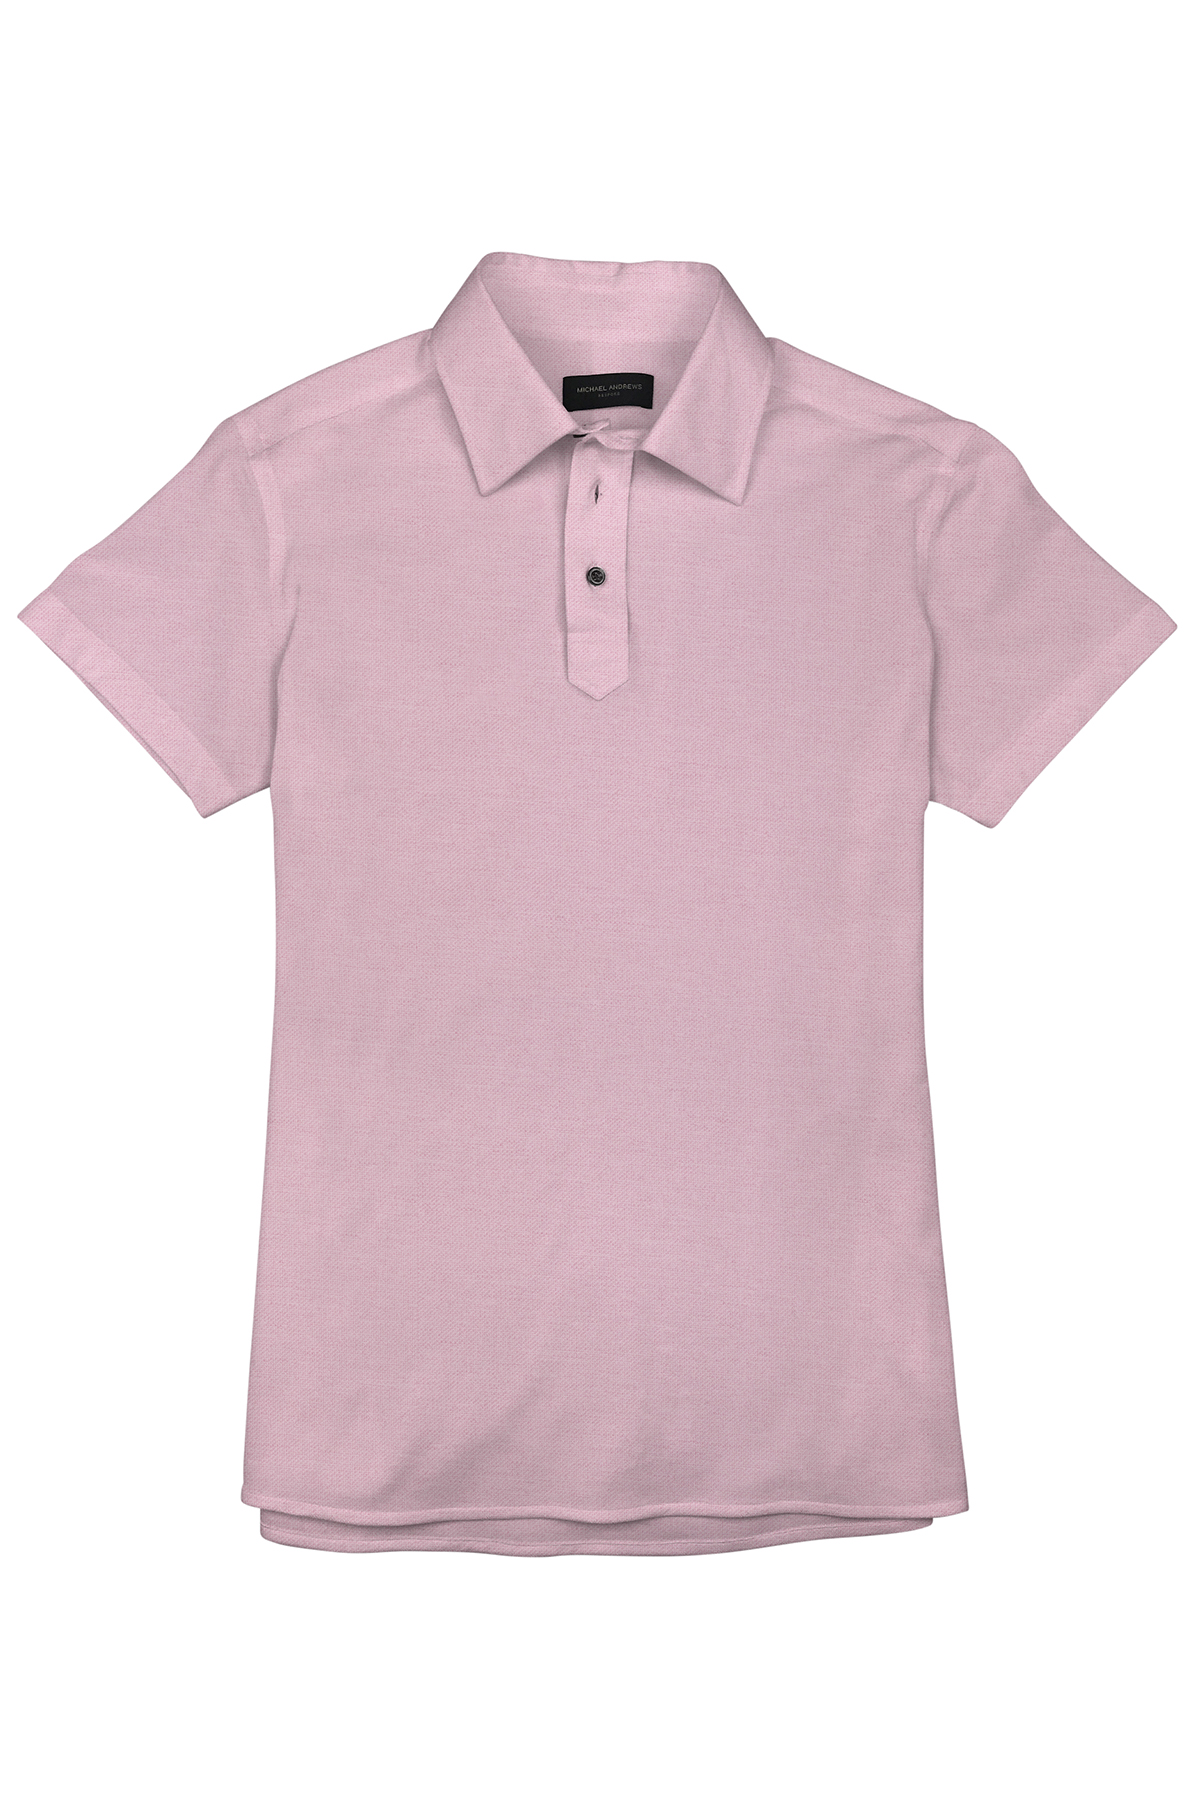 Dark Millennial Pink Pique Short Sleeve Polo Shirt